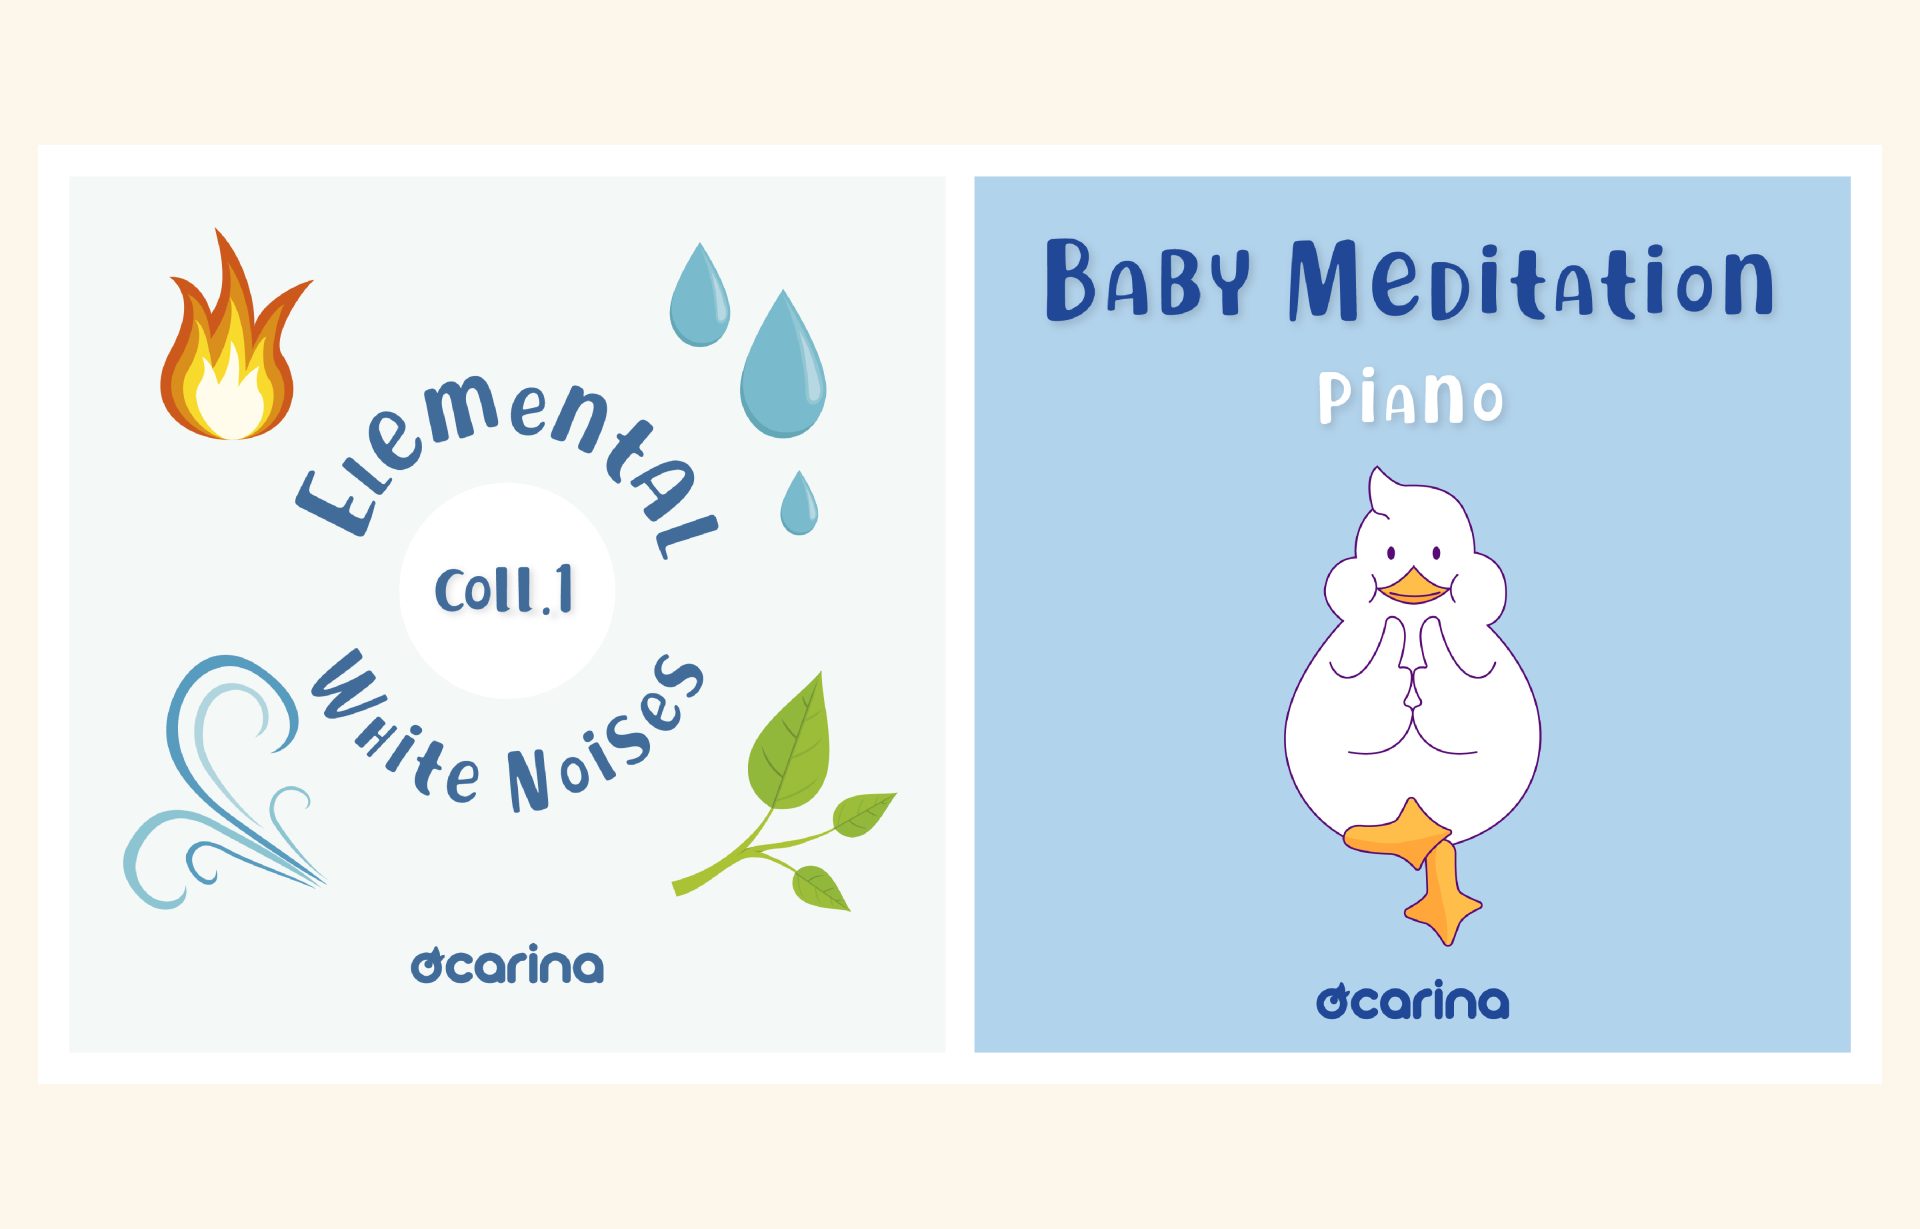 Le nuove playlist Ocarina per il relax e il benessere dei tuoi bambini